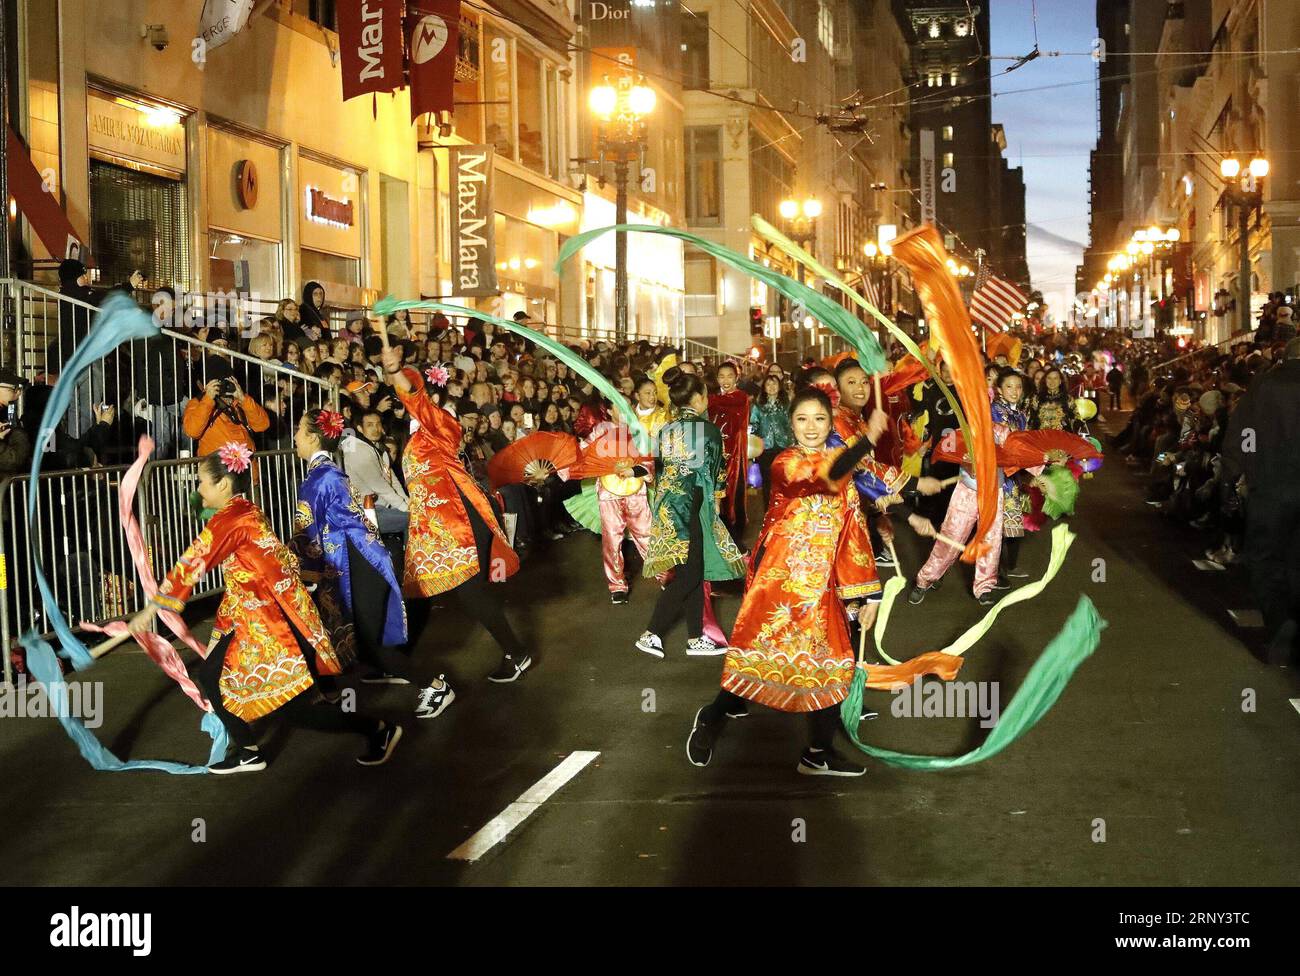 (180225) -- SAN FRANCISCO, 25. Februar 2018 -- Darsteller nehmen am 24. Februar 2018 an der jährlichen Karnevalsparade des chinesischen Neujahrs in San Francisco, USA, Teil. Etwa eine Million Einwohner und Besucher packten am Samstag beide Seiten der Hauptstraßen und engen Gassen in San Franciscos Chinatown an der US-Westküste, die bei der größten jährlichen Karnevalsparade des chinesischen Neujahrs außerhalb Chinas gefeiert wurden. ) (rh) U.S.-SAN FRANCISCO-CARNIVAL DongxXudong PUBLICATIONxNOTxINxCHN Stockfoto